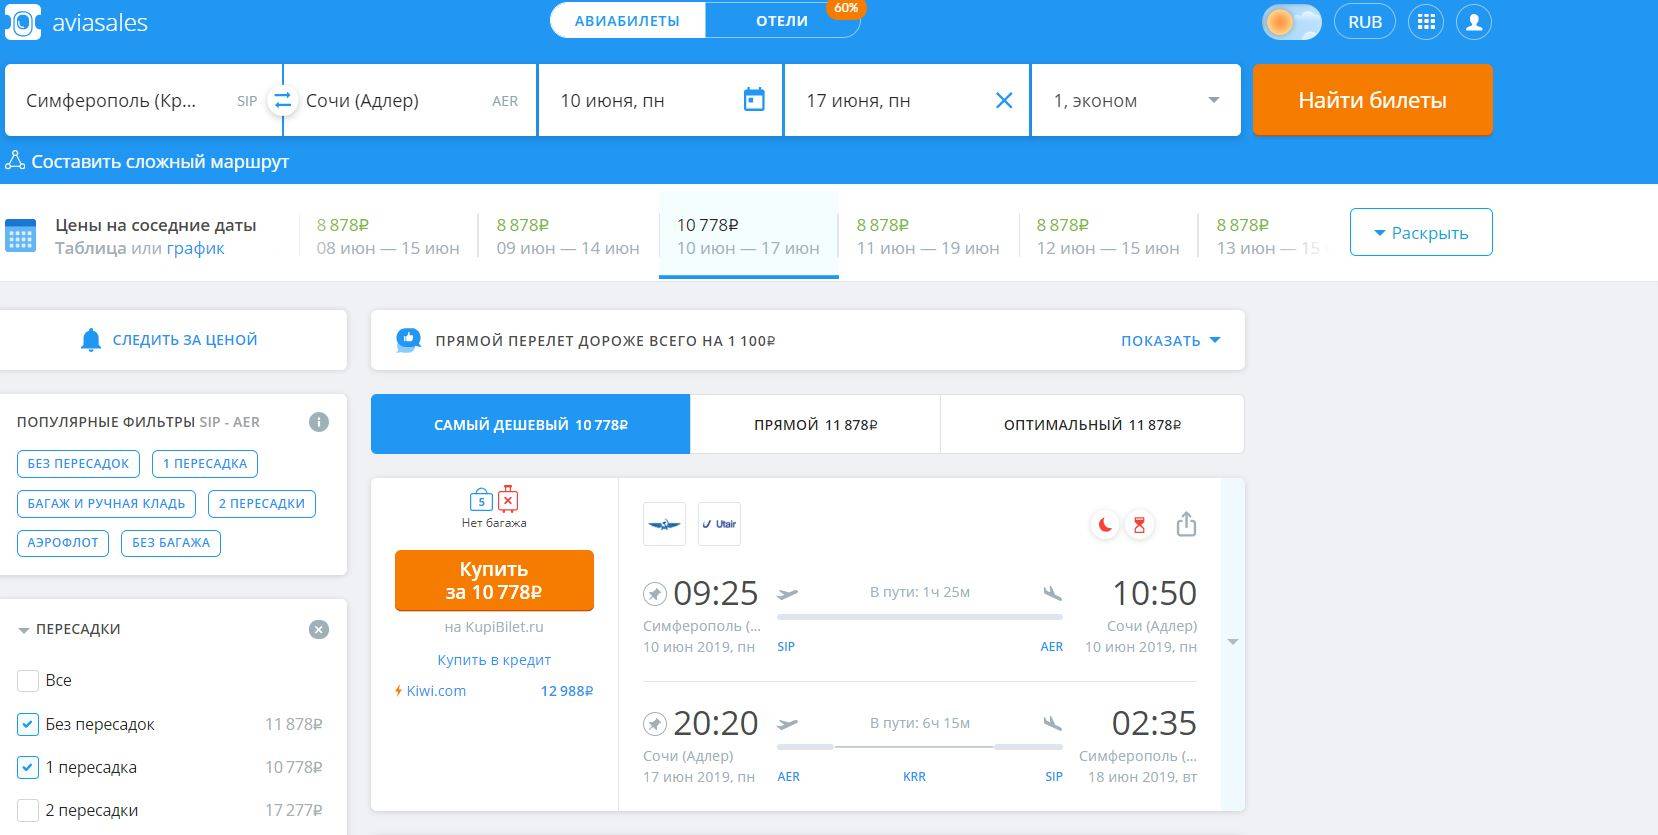 Авиабилеты купить билет недорого в москву авиабилеты хабаровск нерюнгри прямой рейс